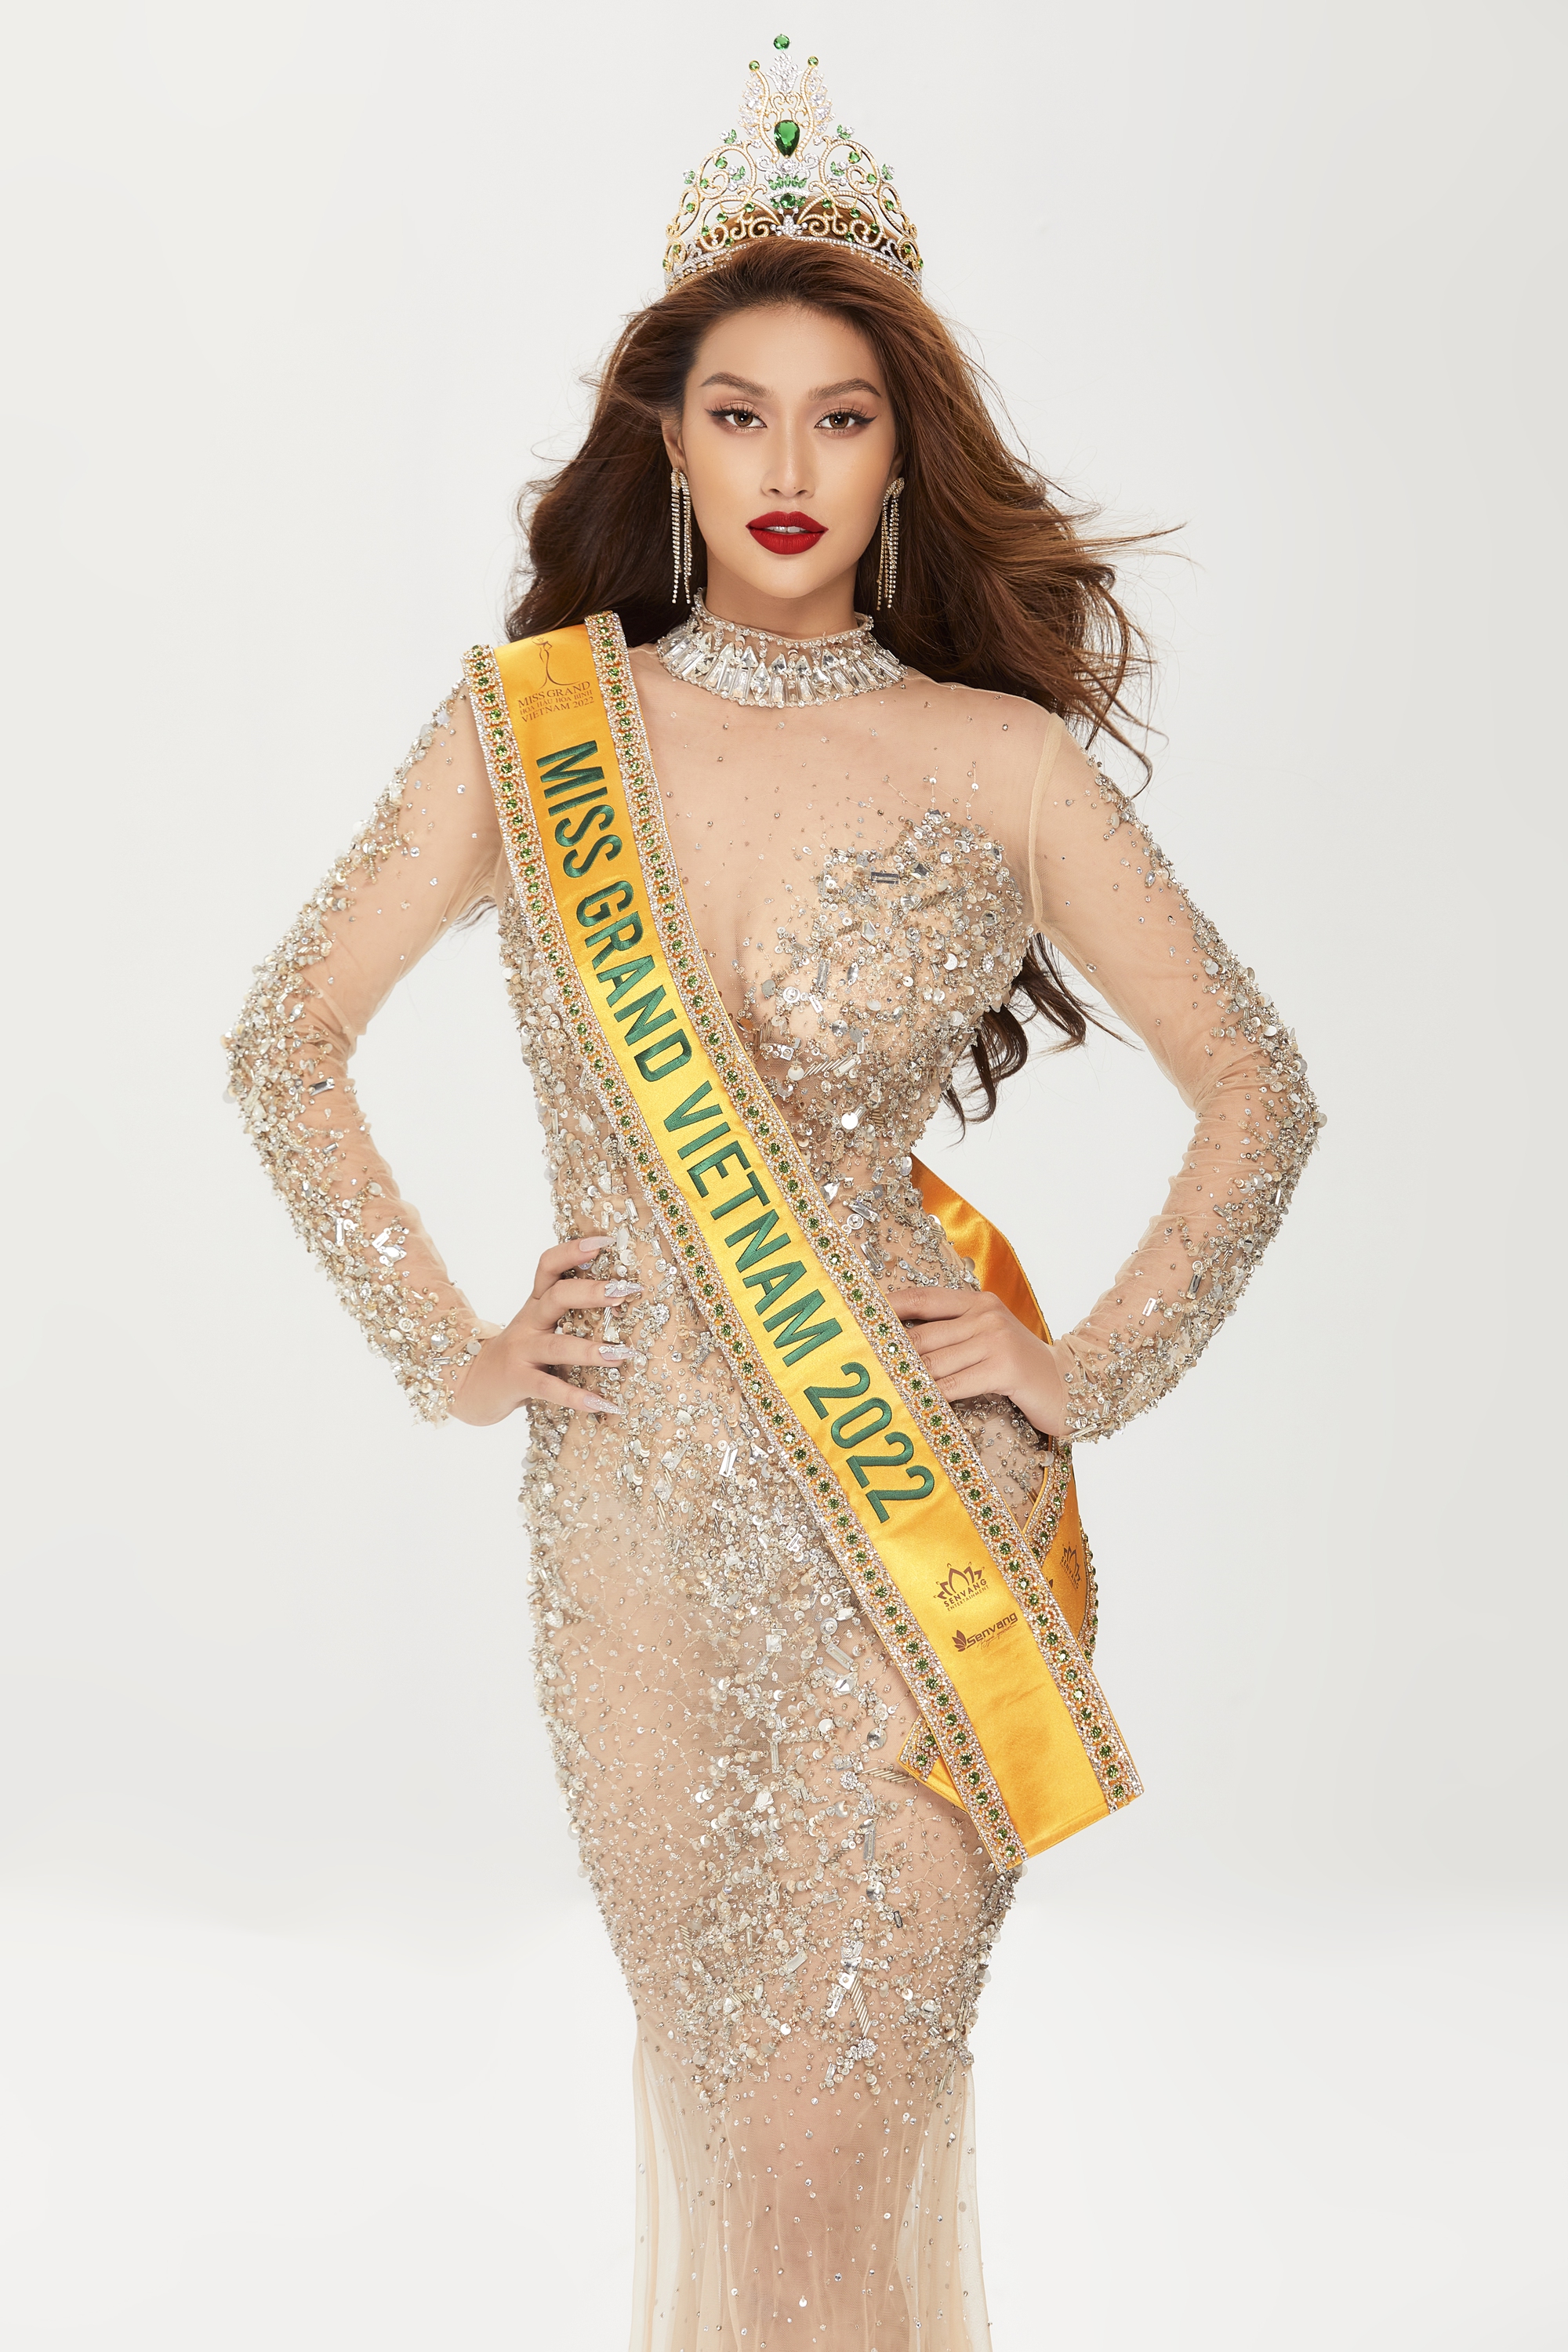 Hoa hậu Thiên Ân chuẩn bị 30 bộ trang phục cho hành trình Miss Grand International 2022 - Ảnh 3.